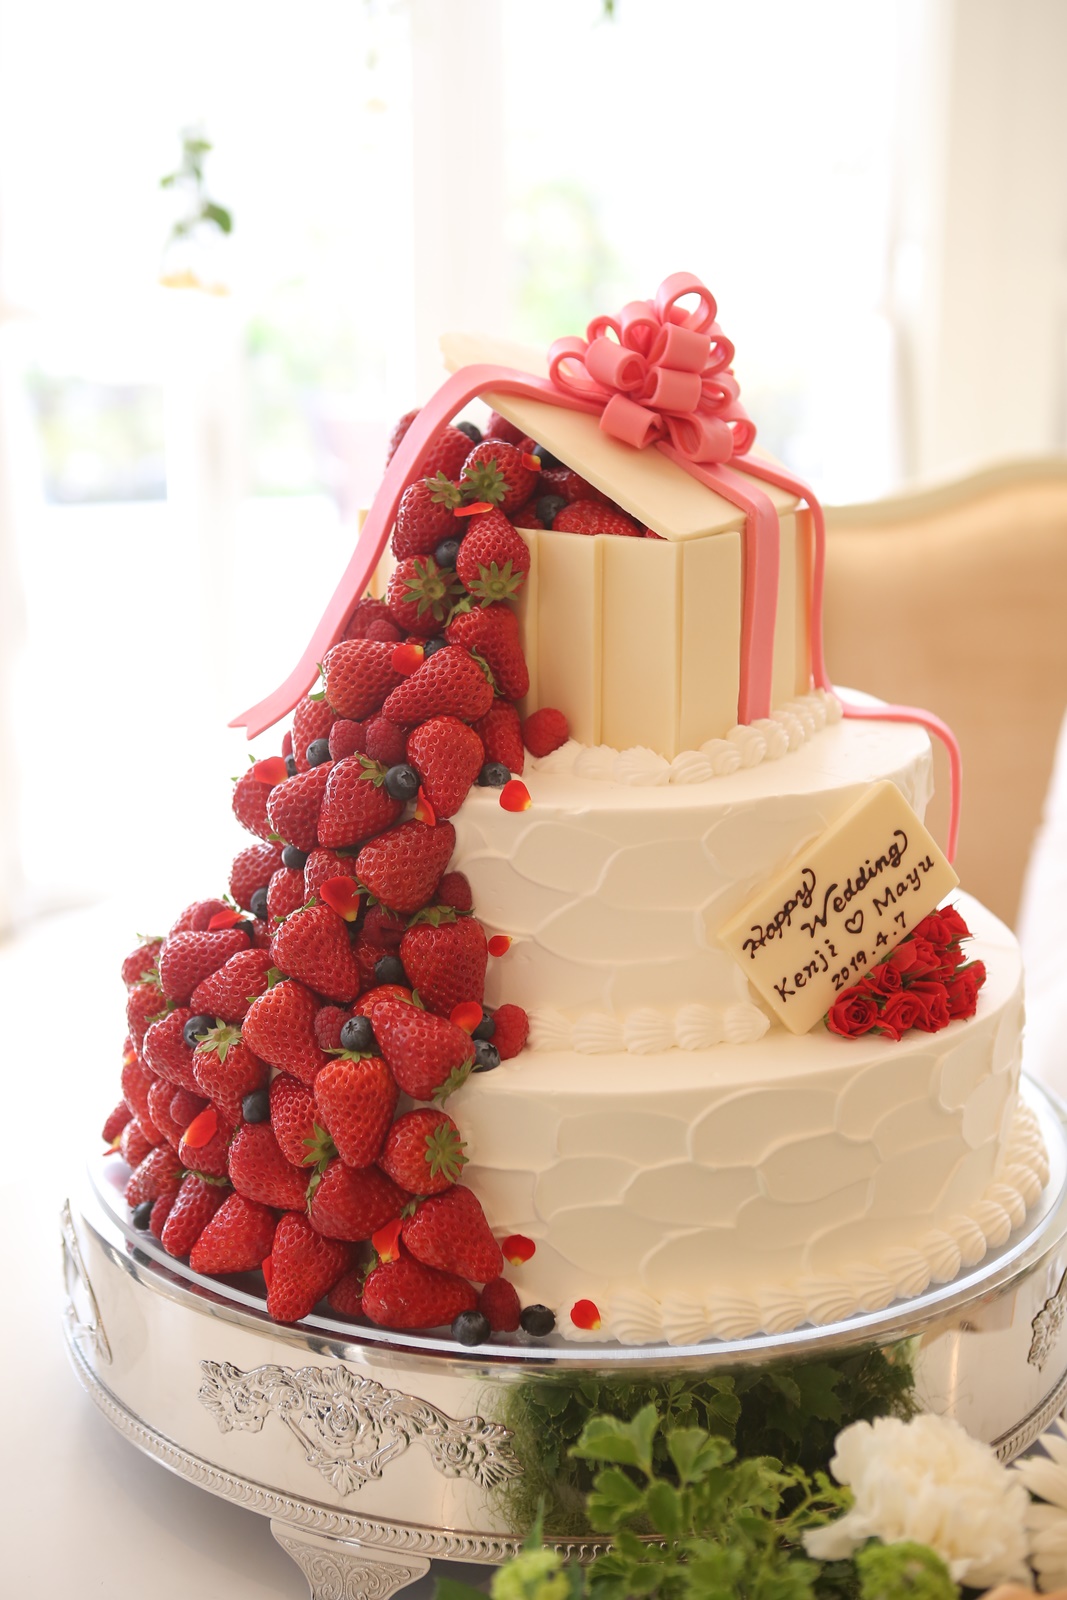 苺があふれ出たような可愛いケーキ ニュース ブログ 滋賀 近江八幡の結婚式場 公式 ヴィラ アンジェリカ